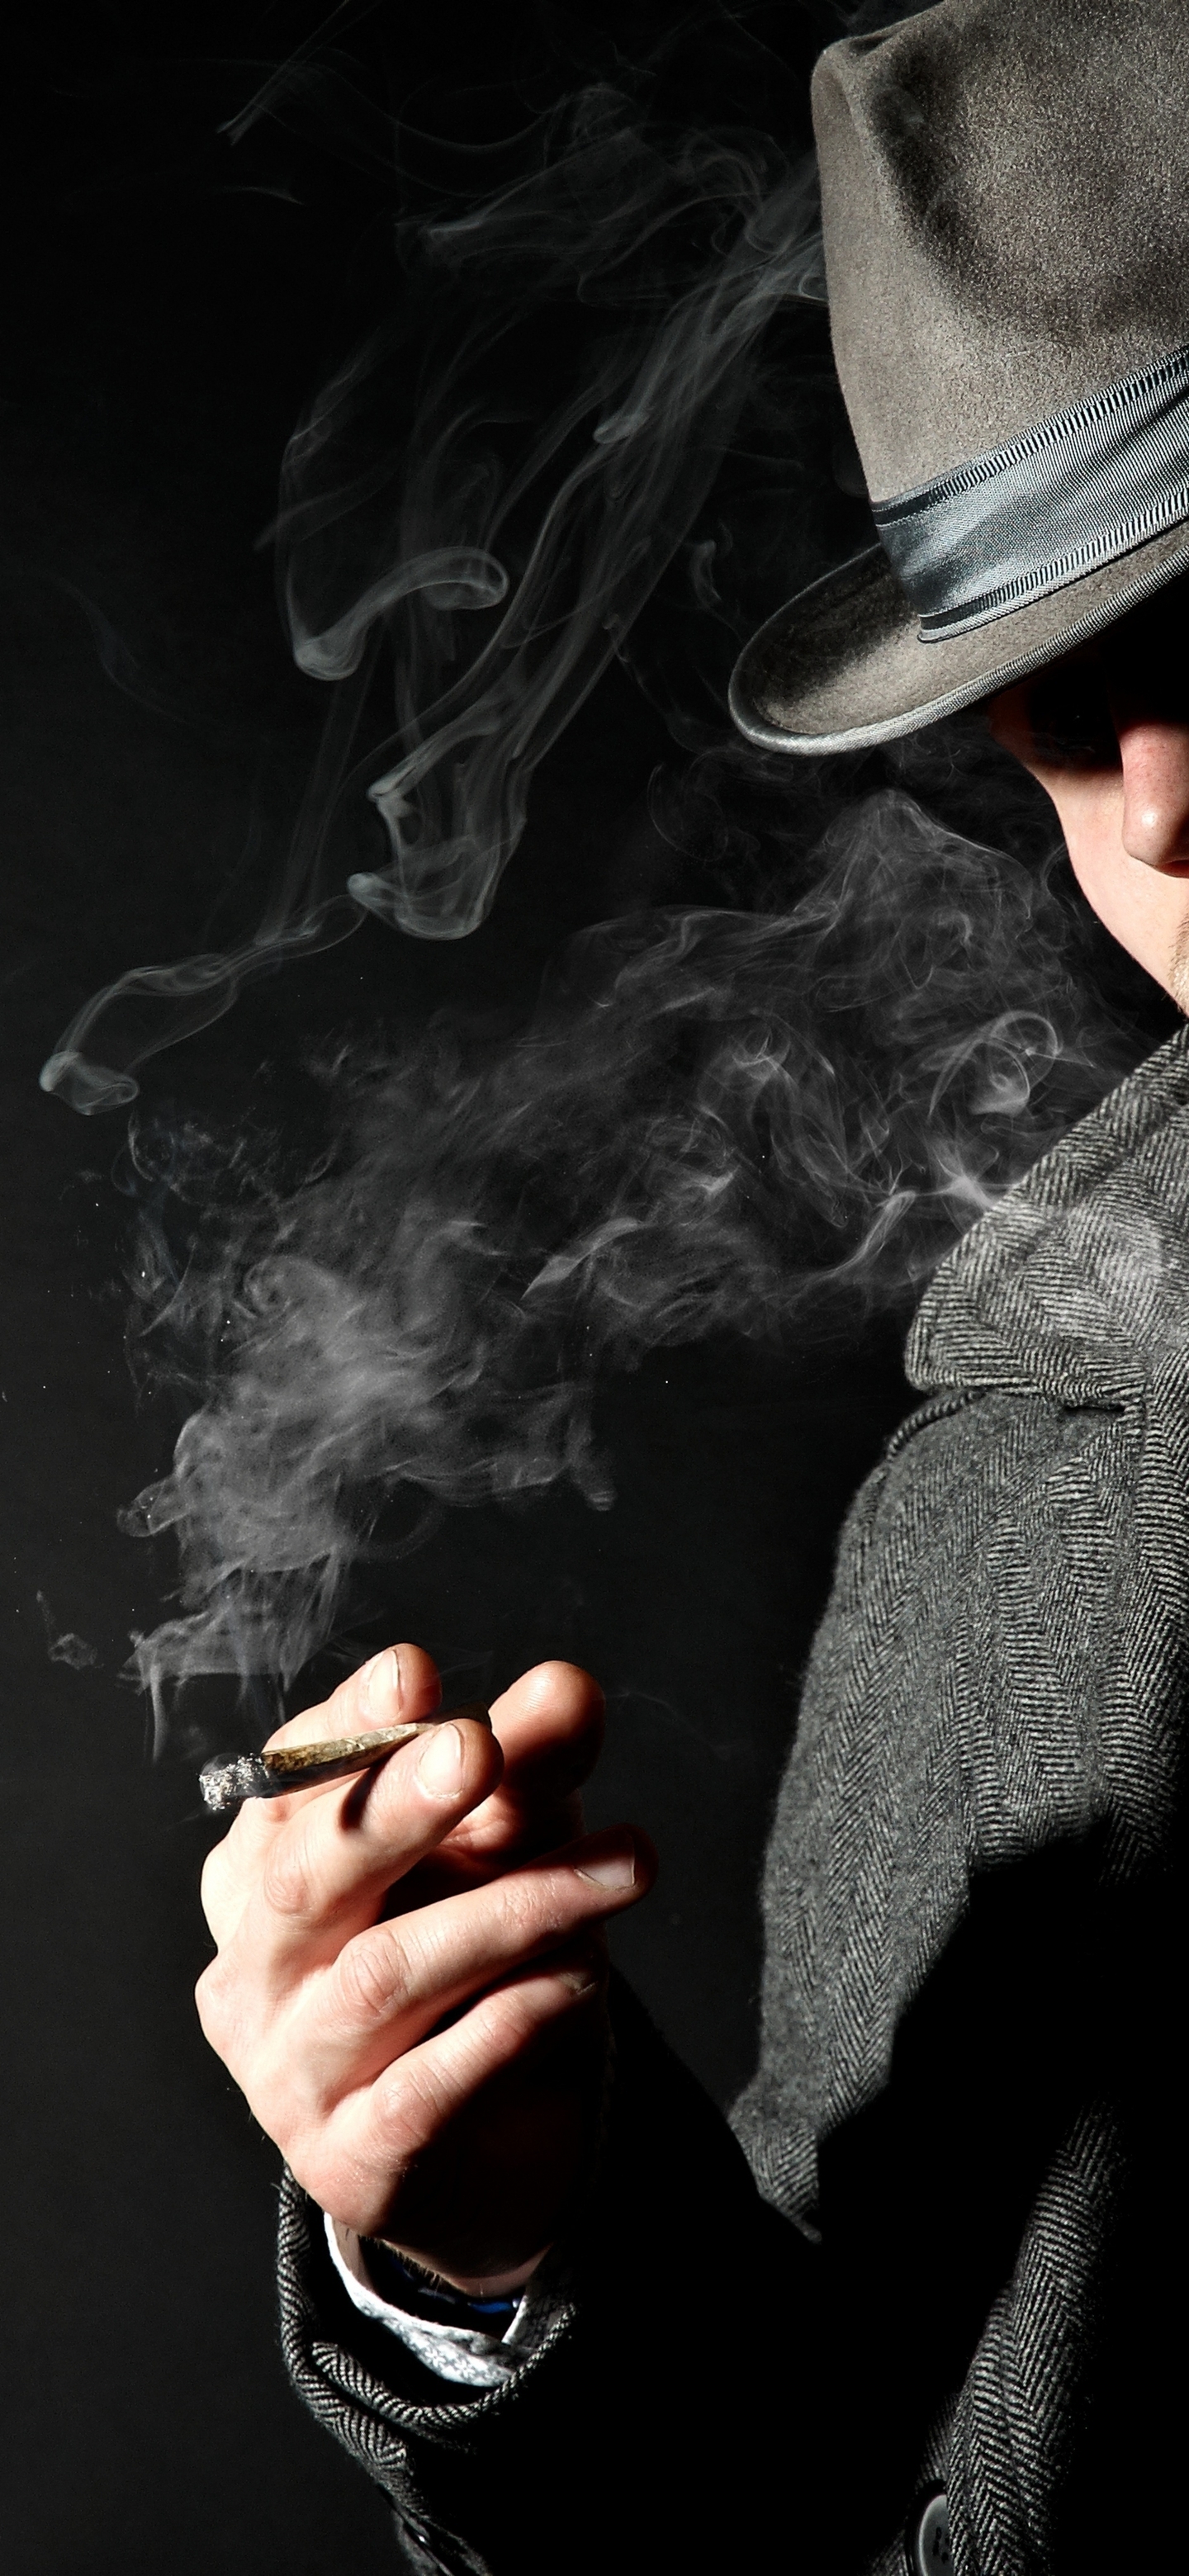 Image: Male, coat, tie, hat, smoking, cigar, smoke